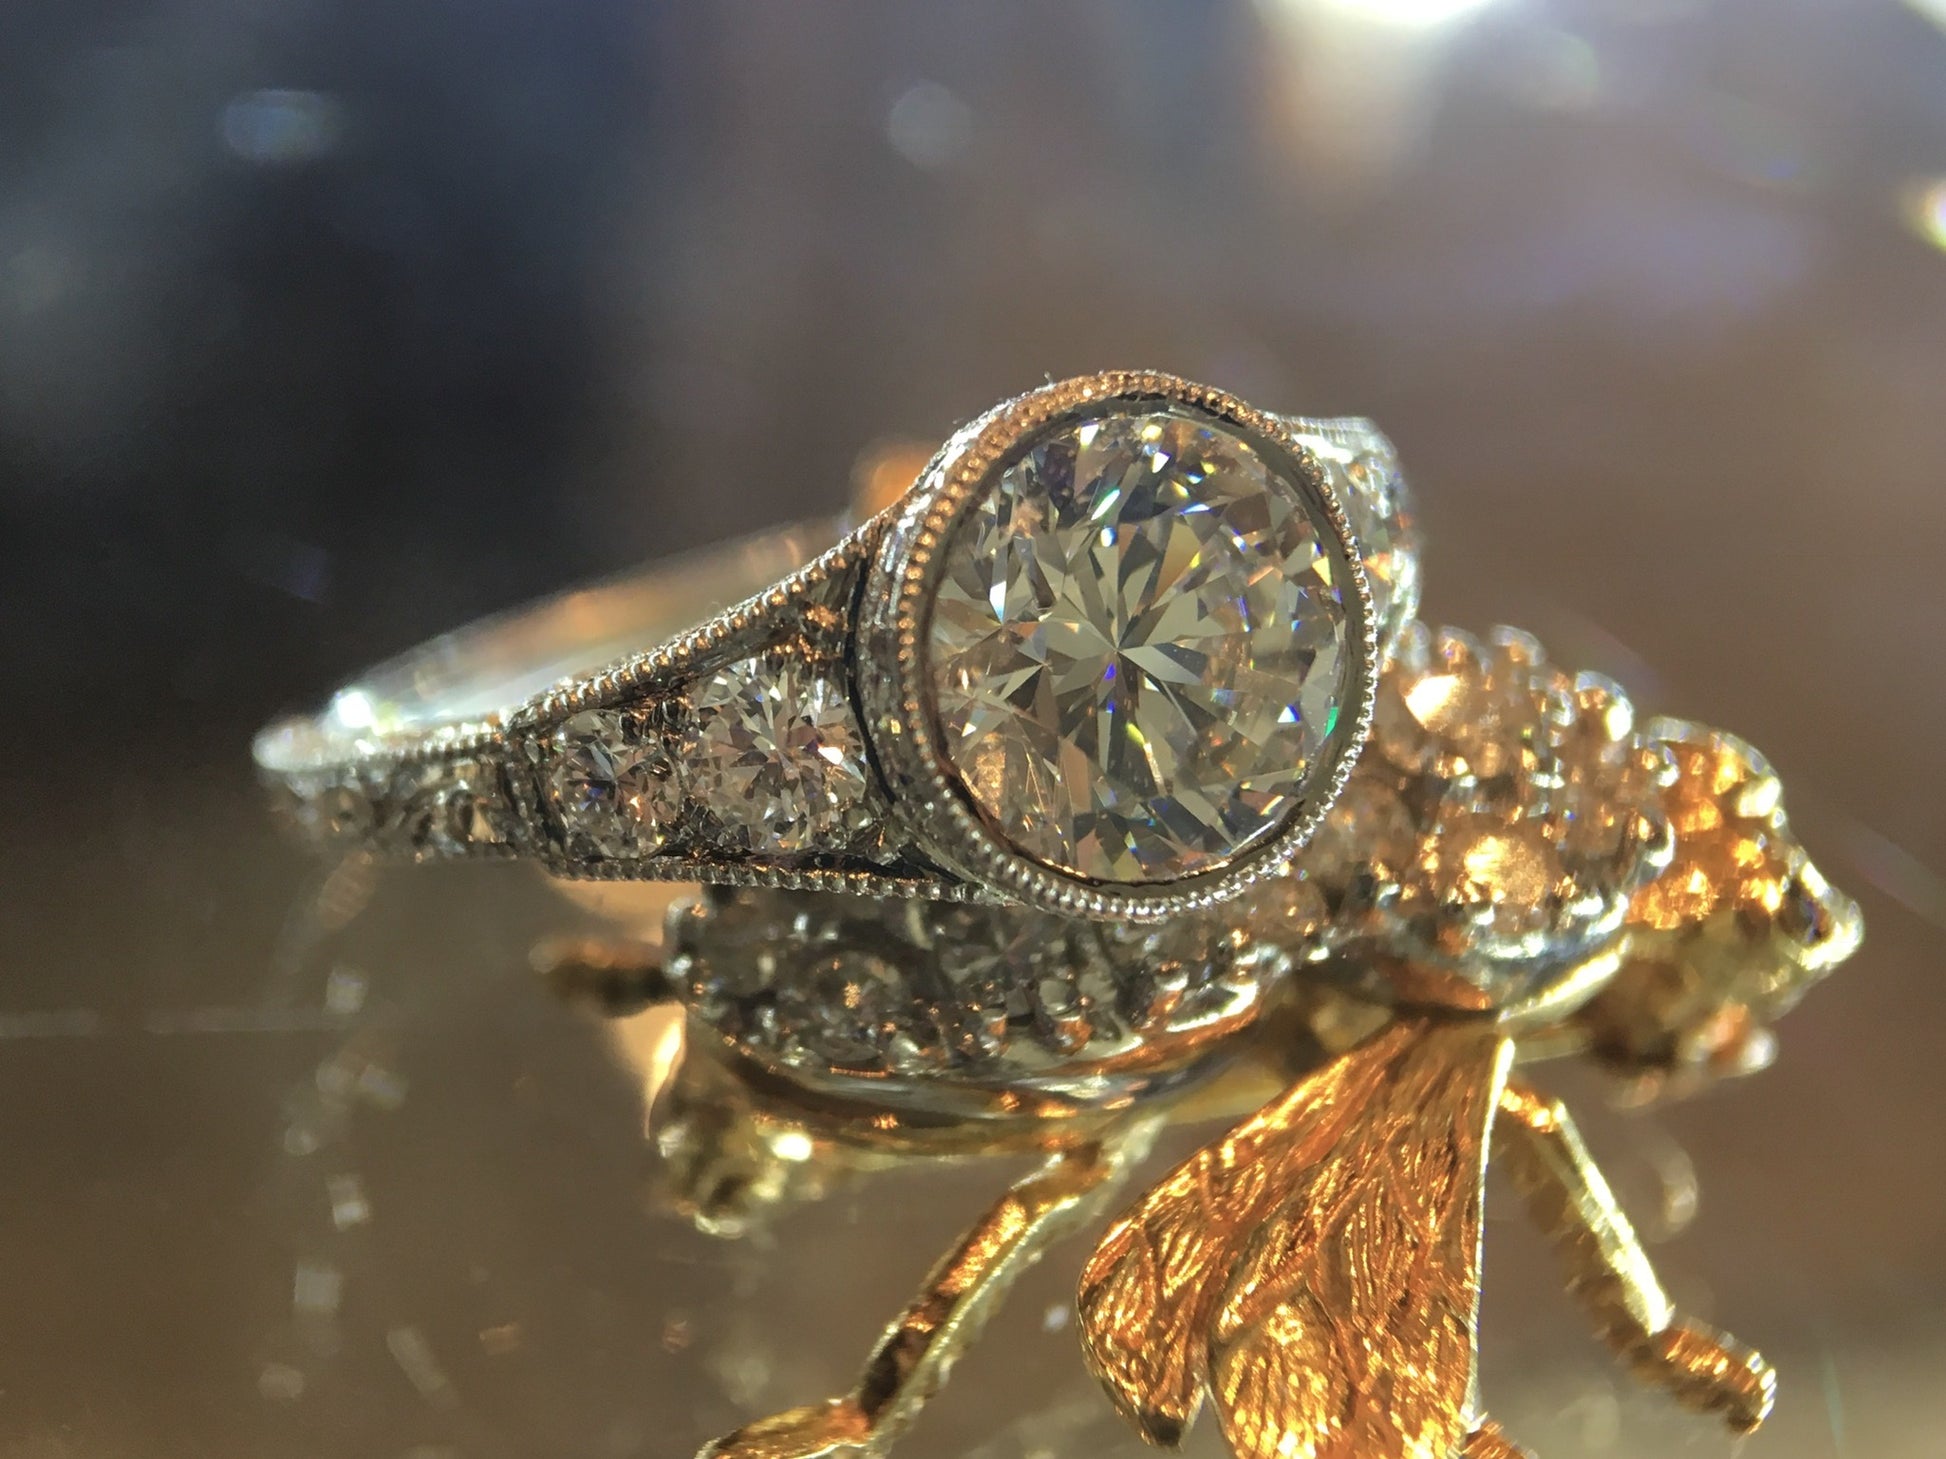 Antique Engagement Ring Art Deco 1.42 Round Brilliant Cut Diamond in Platinum